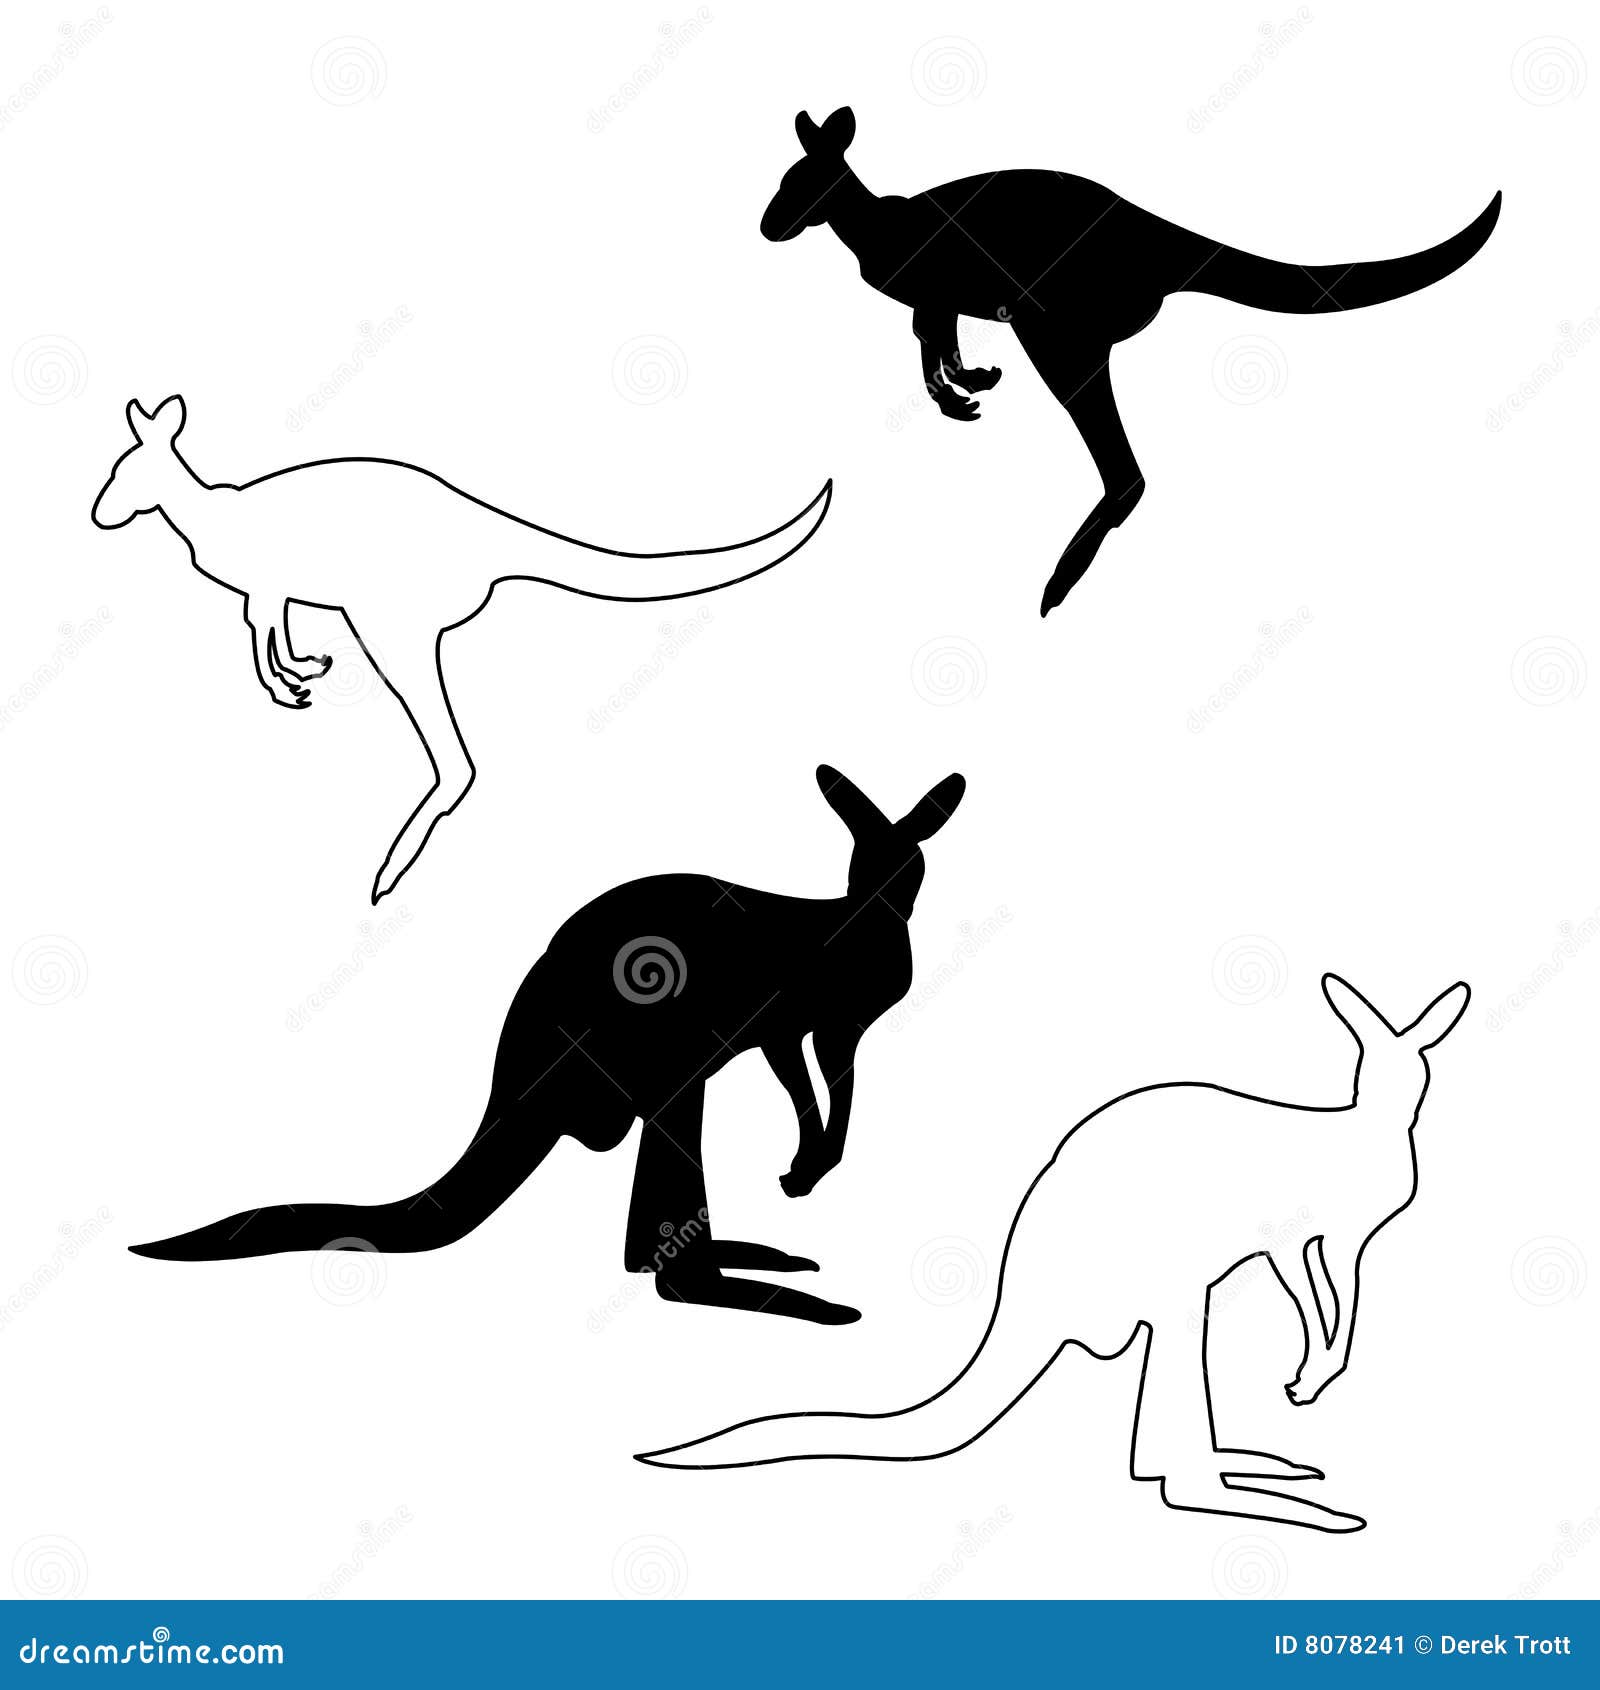 kangaroo silhouette